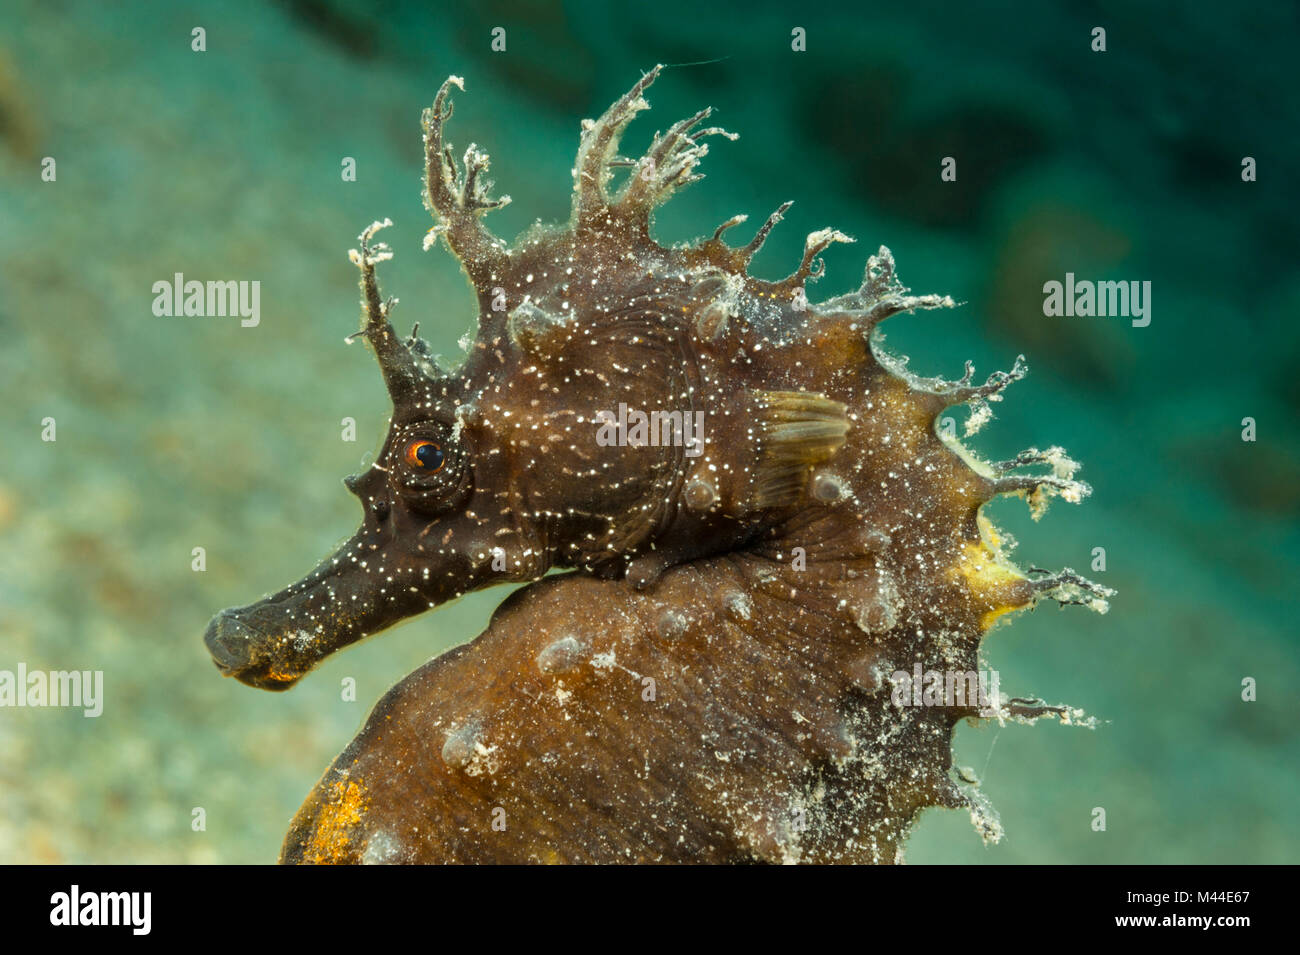 European Sea Horse, Long-snouted Sea Horse (Hippocampus guttulatus), portrait. Croatia Stock Photo